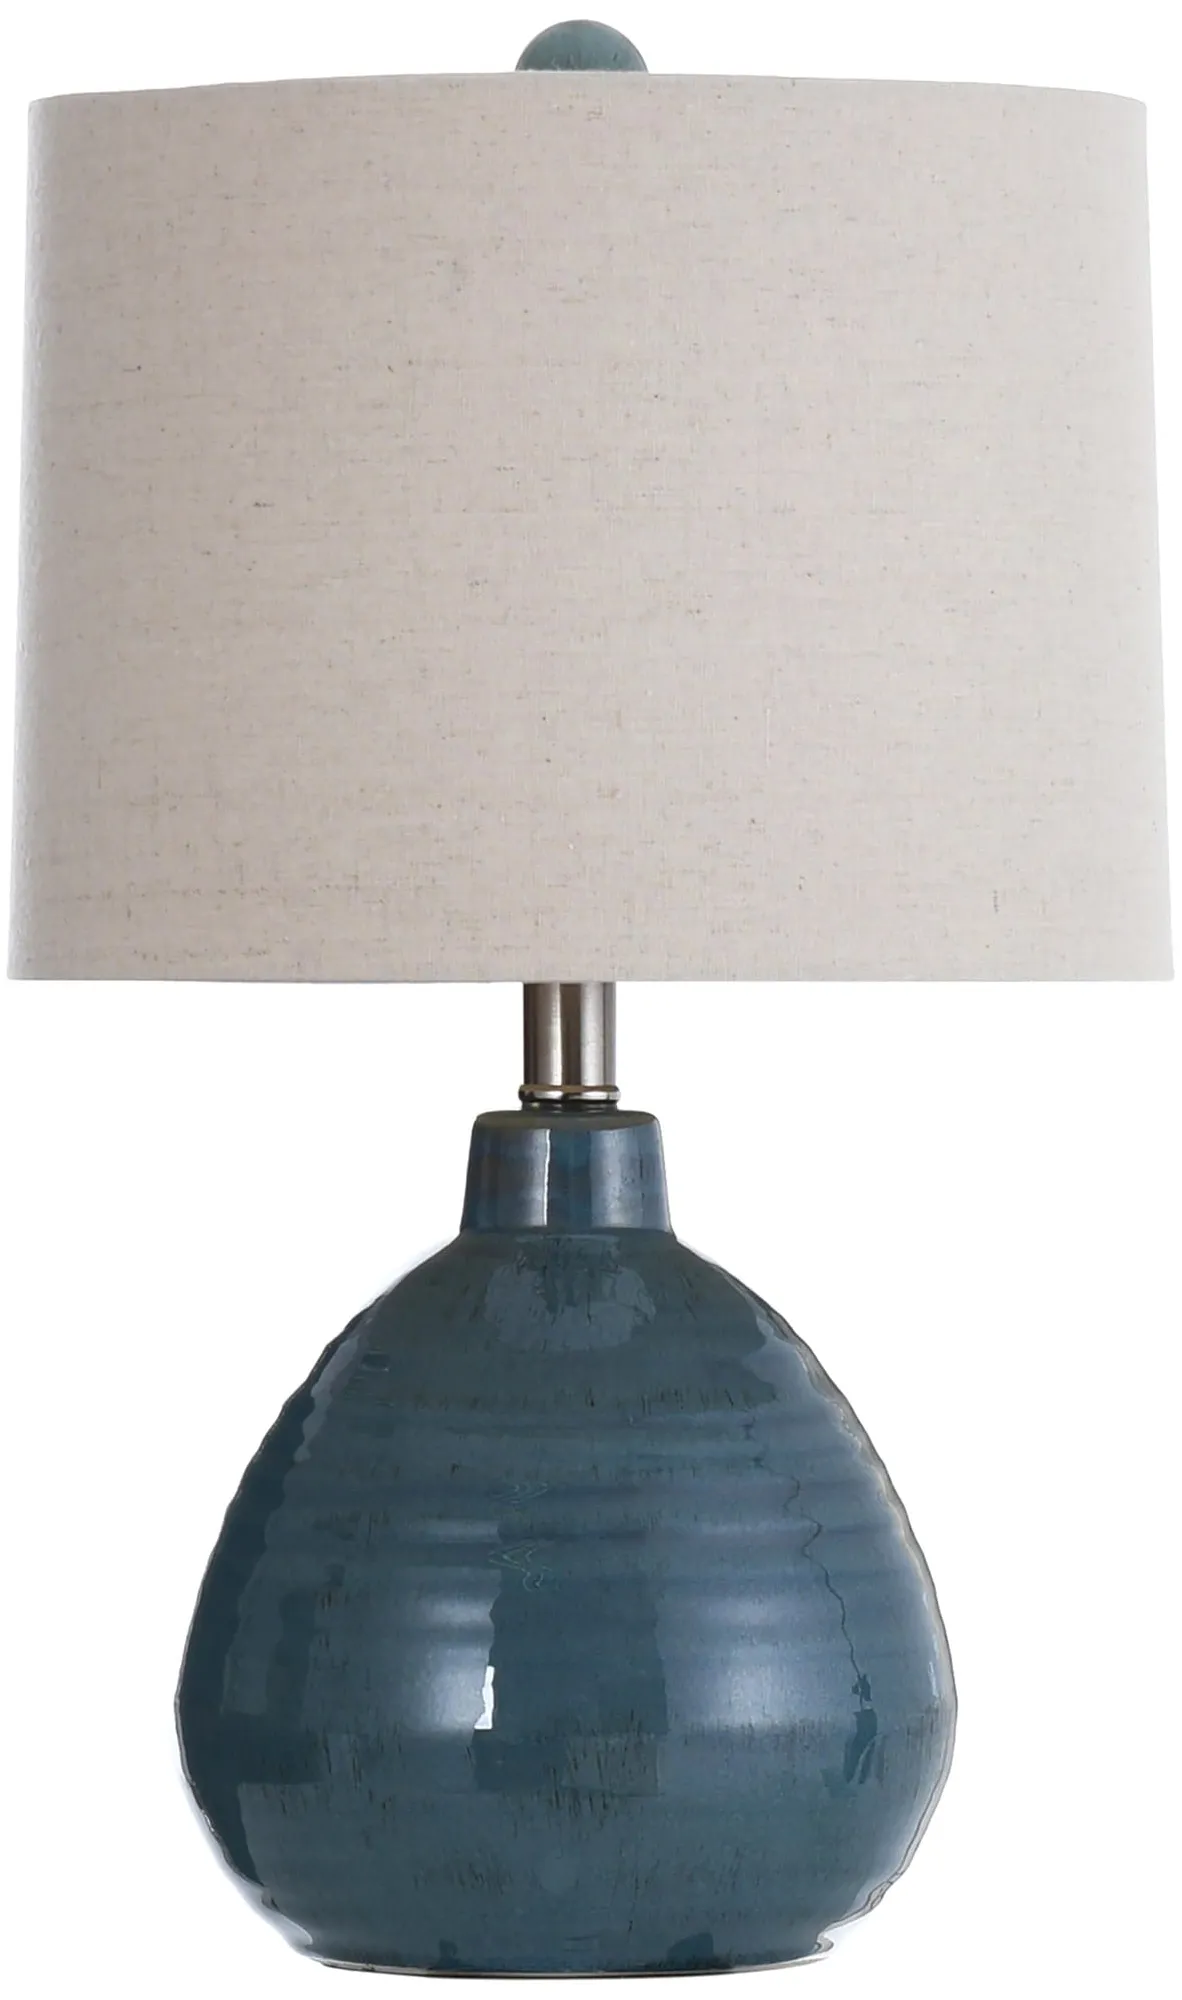 Turquoise Round Ceramic Table Lamp 21"H